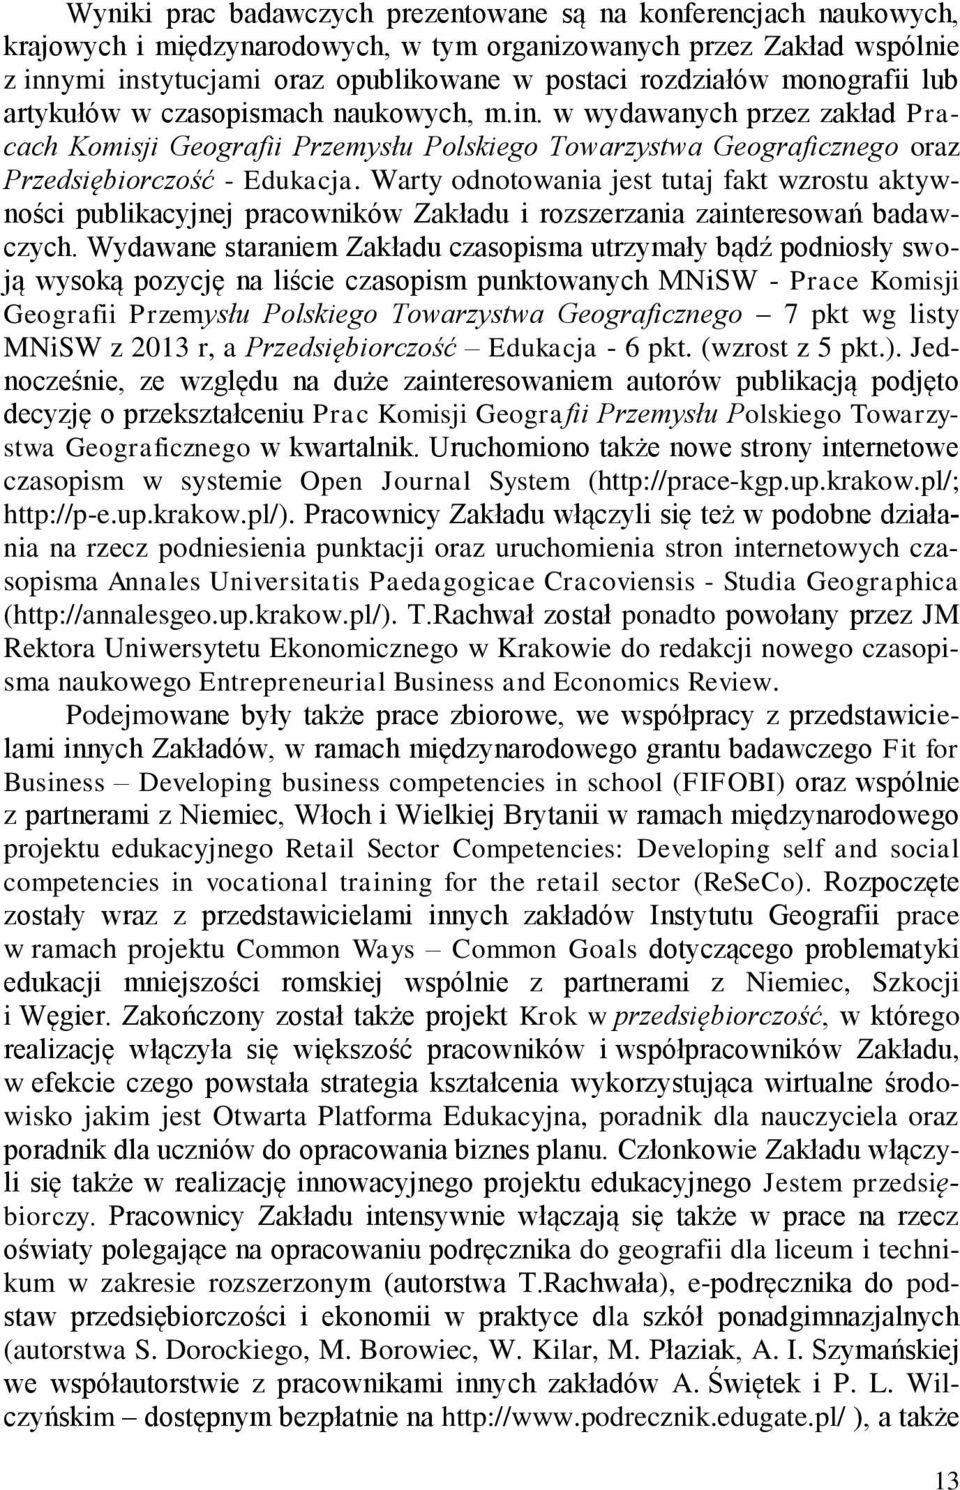 w wydawanych przez zakład Pracach Komisji Geografii Przemysłu Polskiego Towarzystwa Geograficznego oraz Przedsiębiorczość - Edukacja.